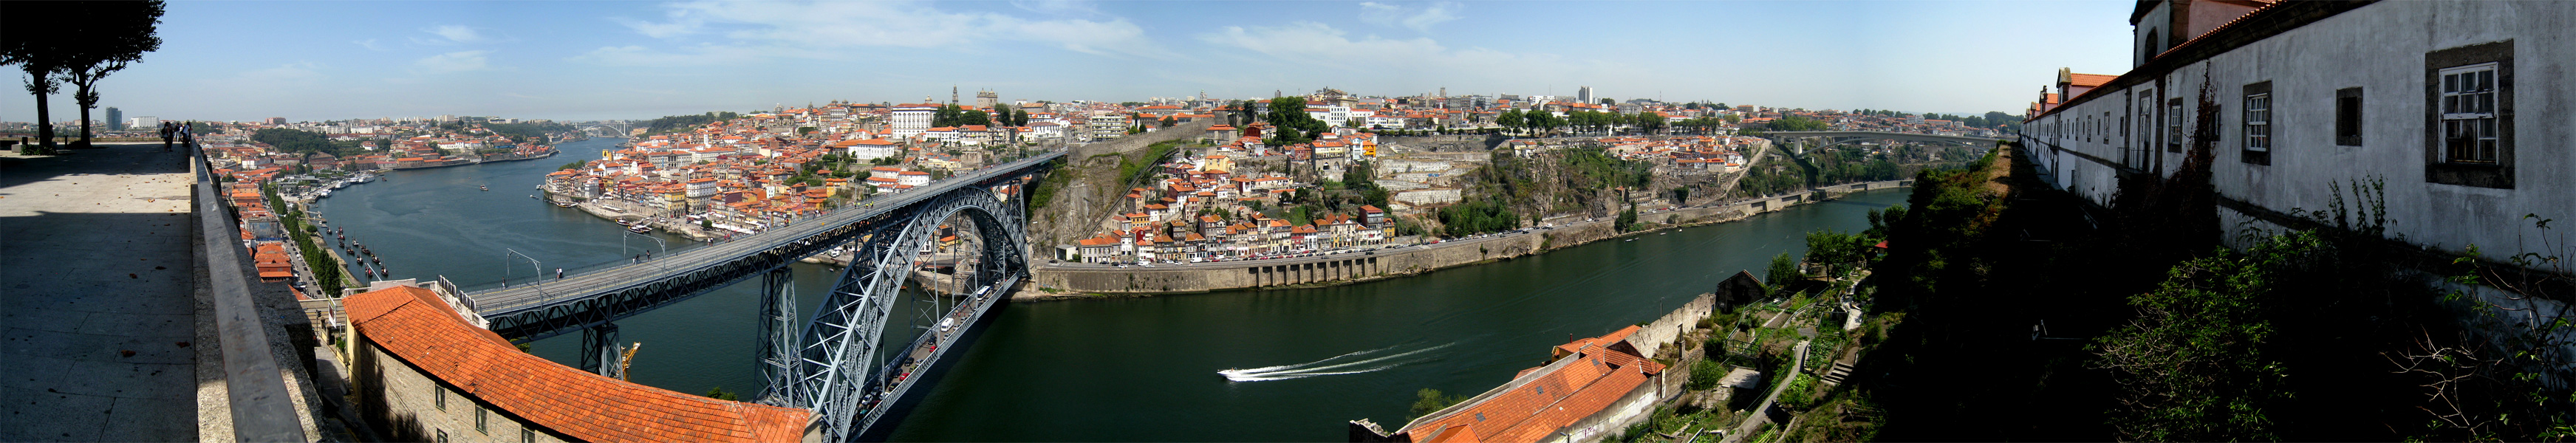 [- El rio de la vida -] Mosteiro da Serra do Pilar, Vila Nova de Gaia (Portugal)